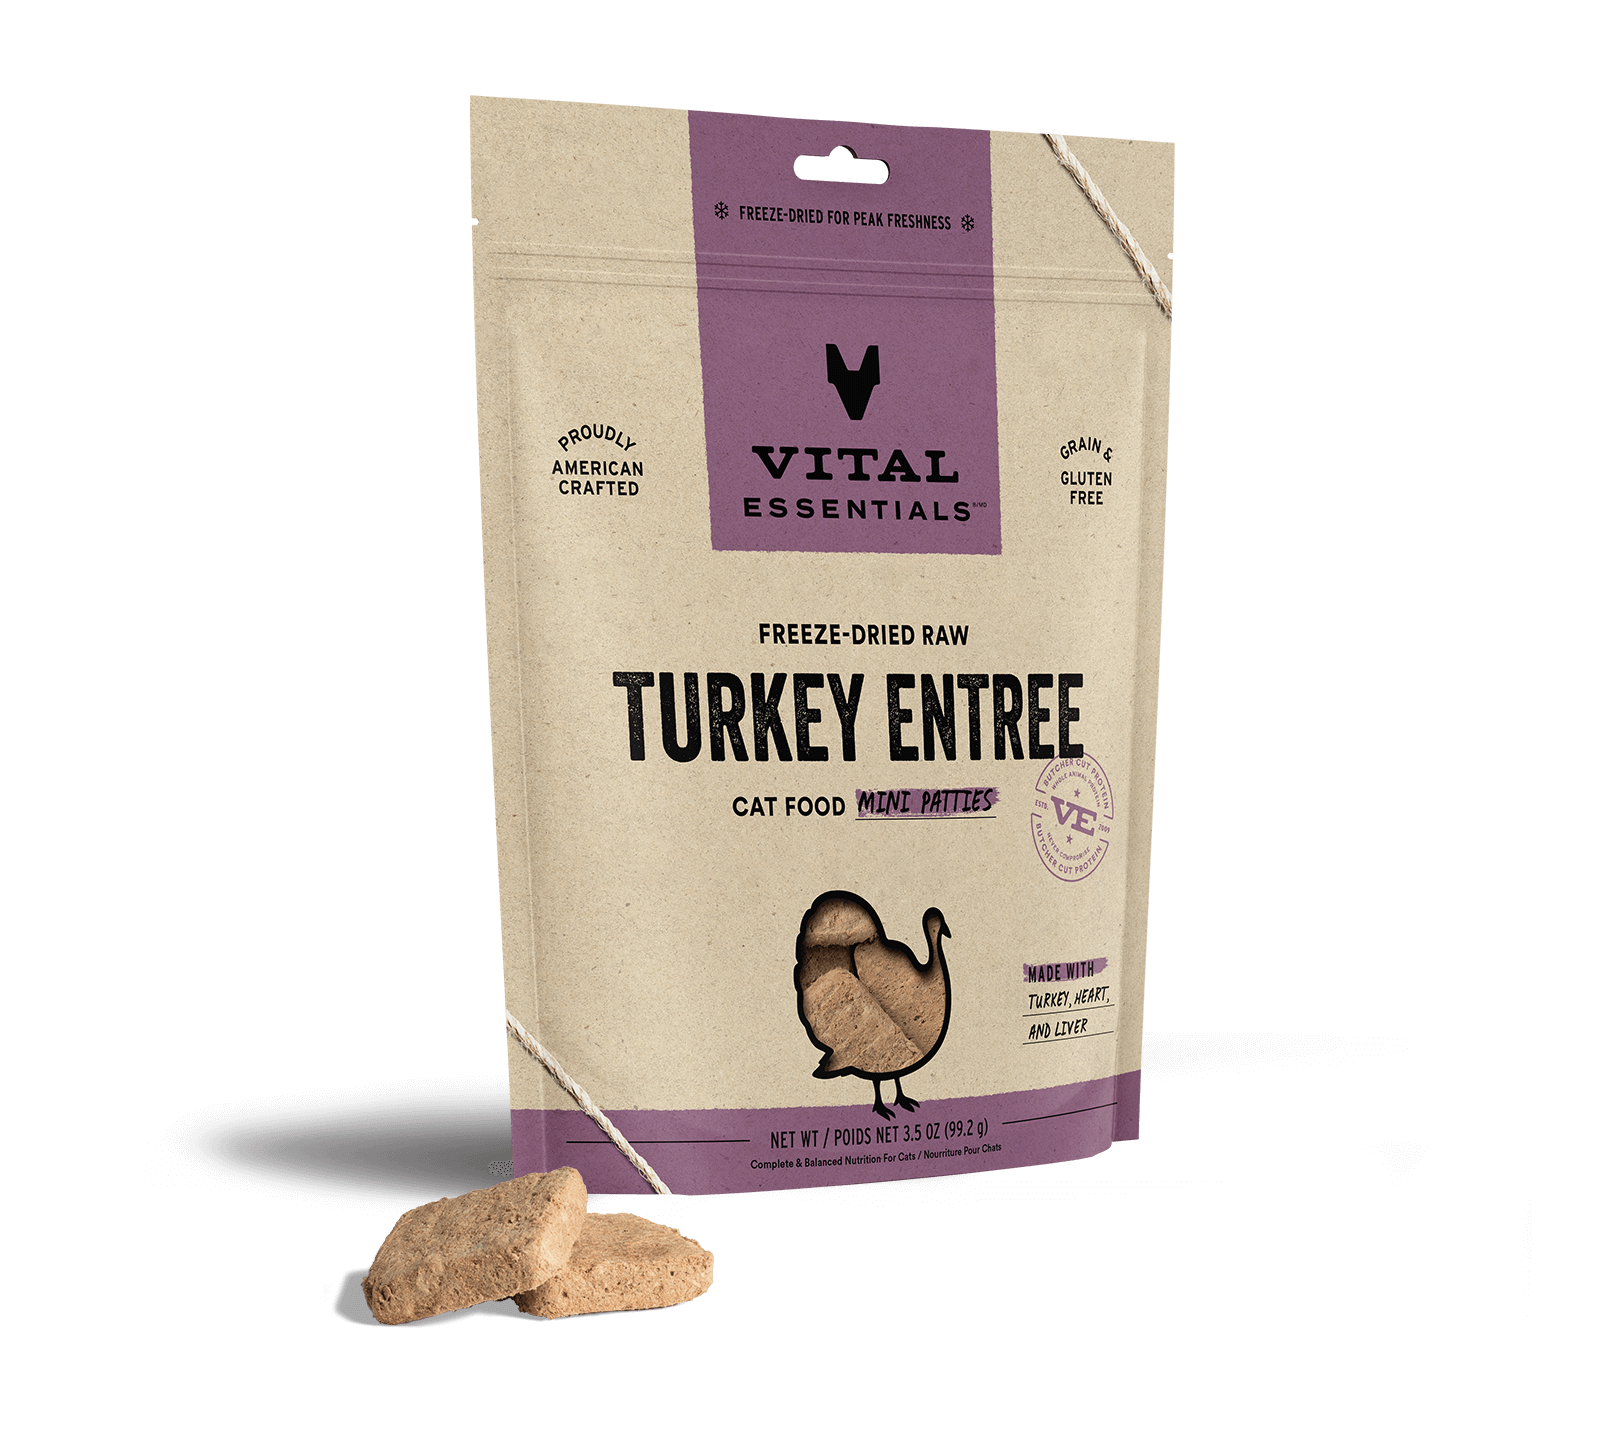 Vital Essentials Freeze-Dried Raw Turkey Entree Cat Food Mini Patties, 3.5 oz - Food